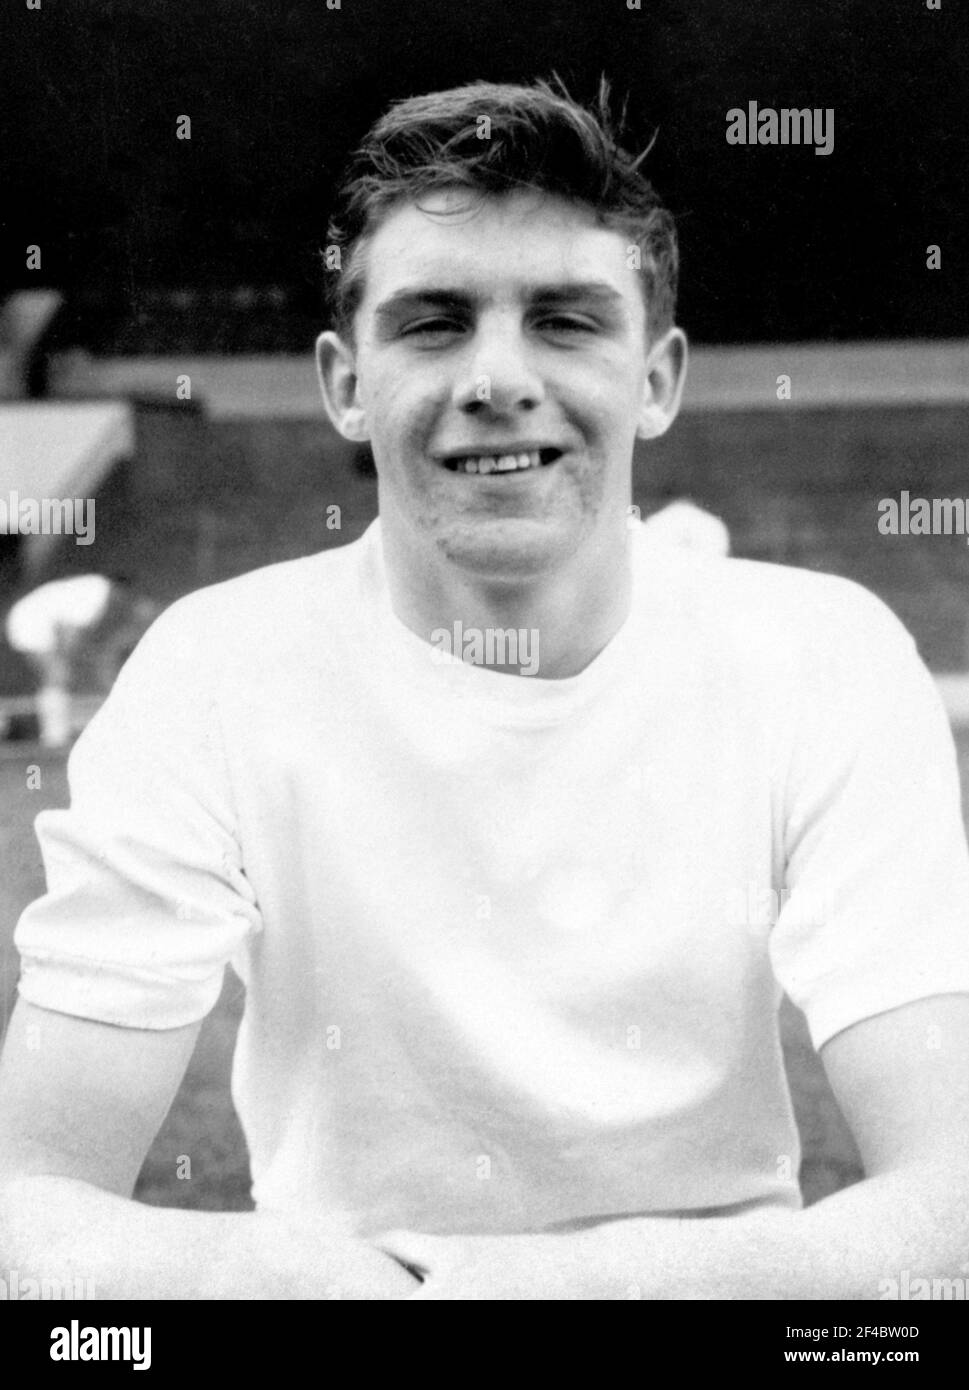 Datei-Foto vom 12-09-1962 von Leeds United's Peter Lorimer. Ausgabedatum: Samstag, 20. März 2021. Stockfoto